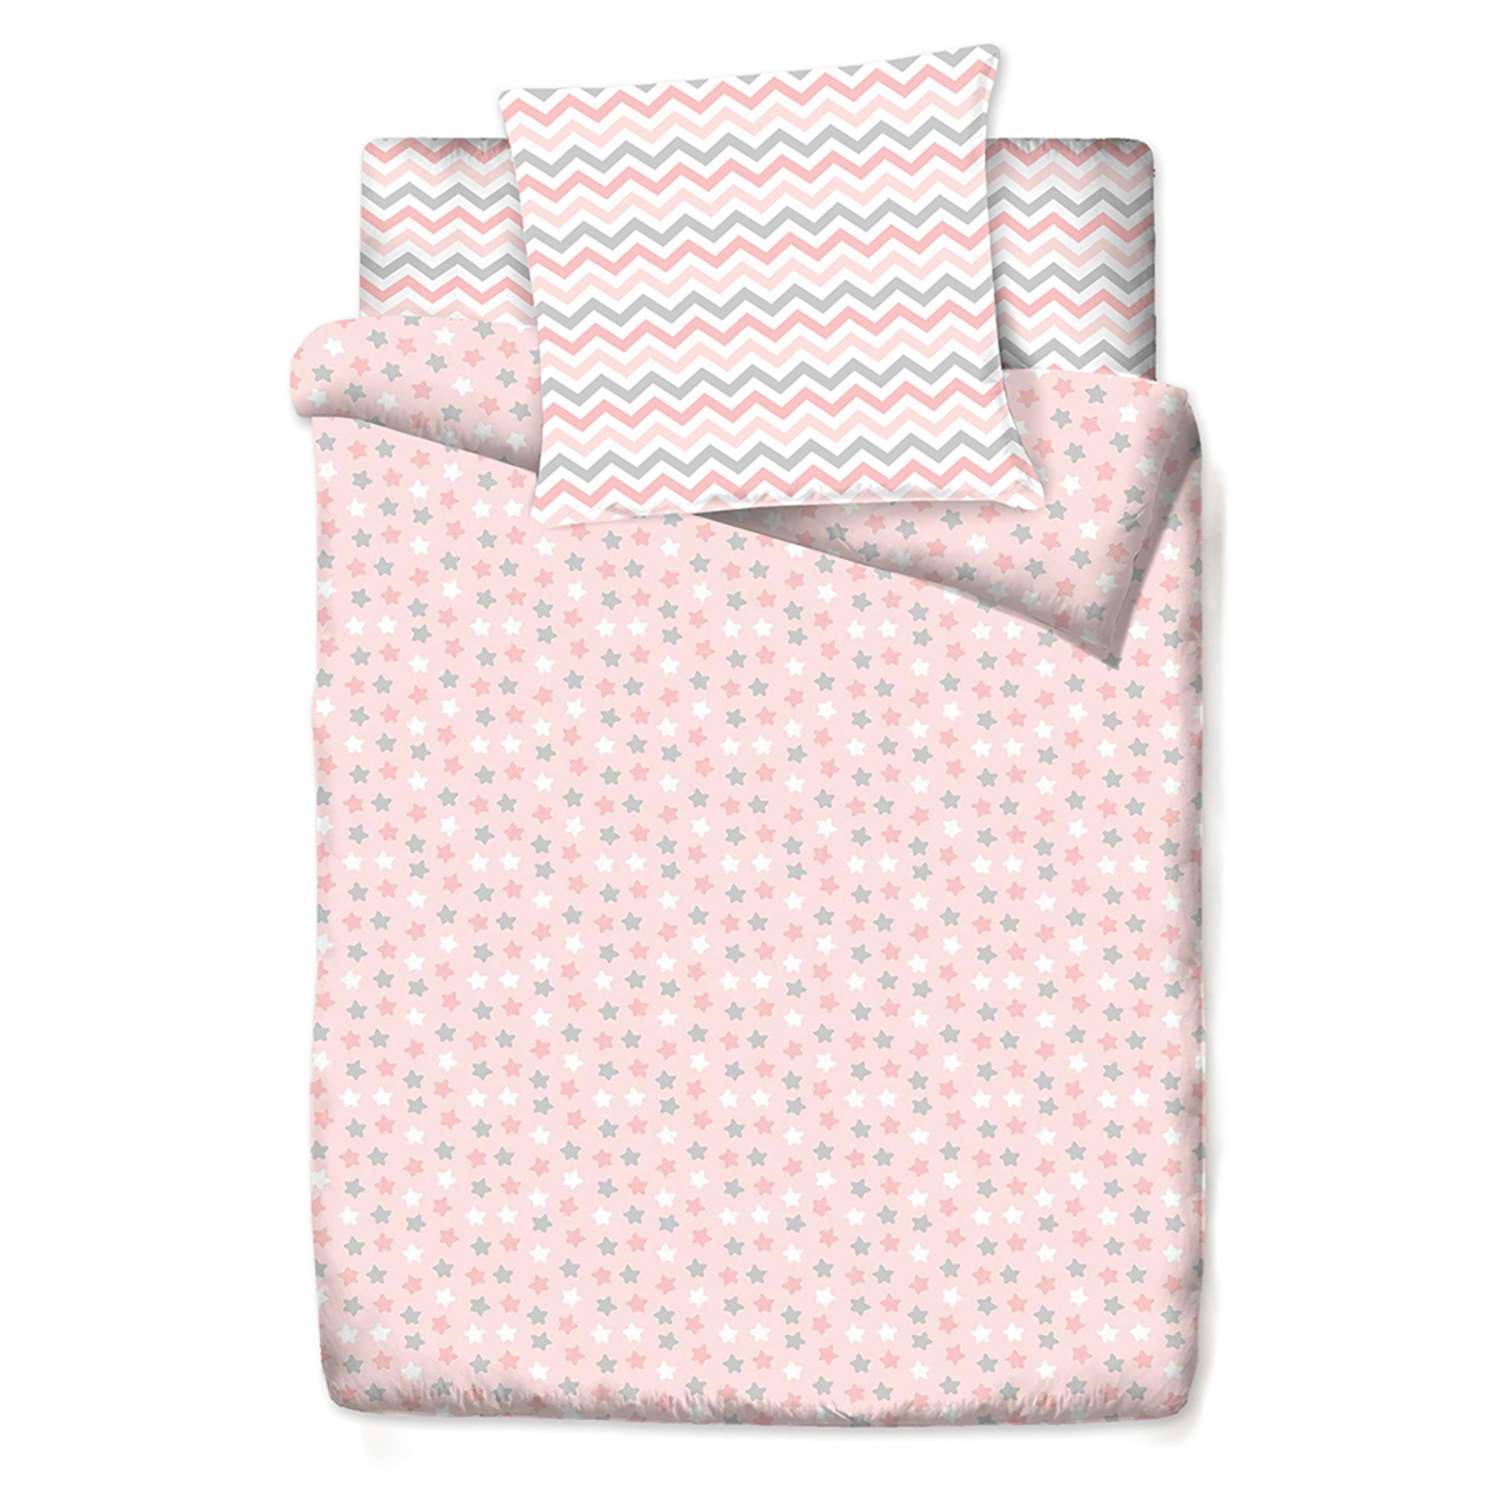 Комплект постельного белья Маленькая соня Цветные сны Розовый 3 предмета м100.05.04 - фото 2